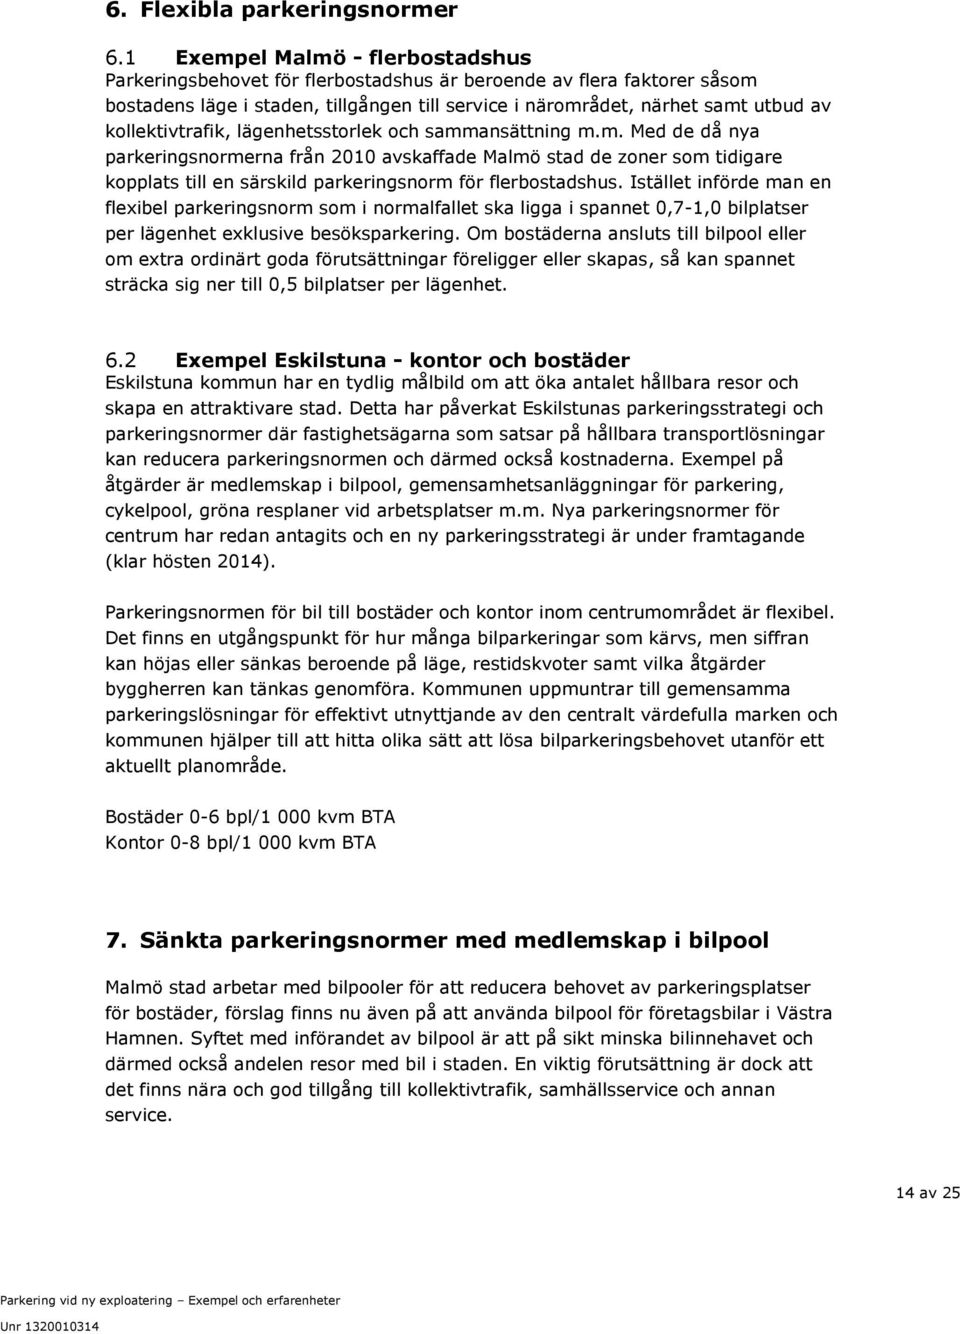 kollektivtrafik, lägenhetsstorlek och sammansättning m.m. Med de då nya parkeringsnormerna från 2010 avskaffade Malmö stad de zoner som tidigare kopplats till en särskild parkeringsnorm för flerbostadshus.